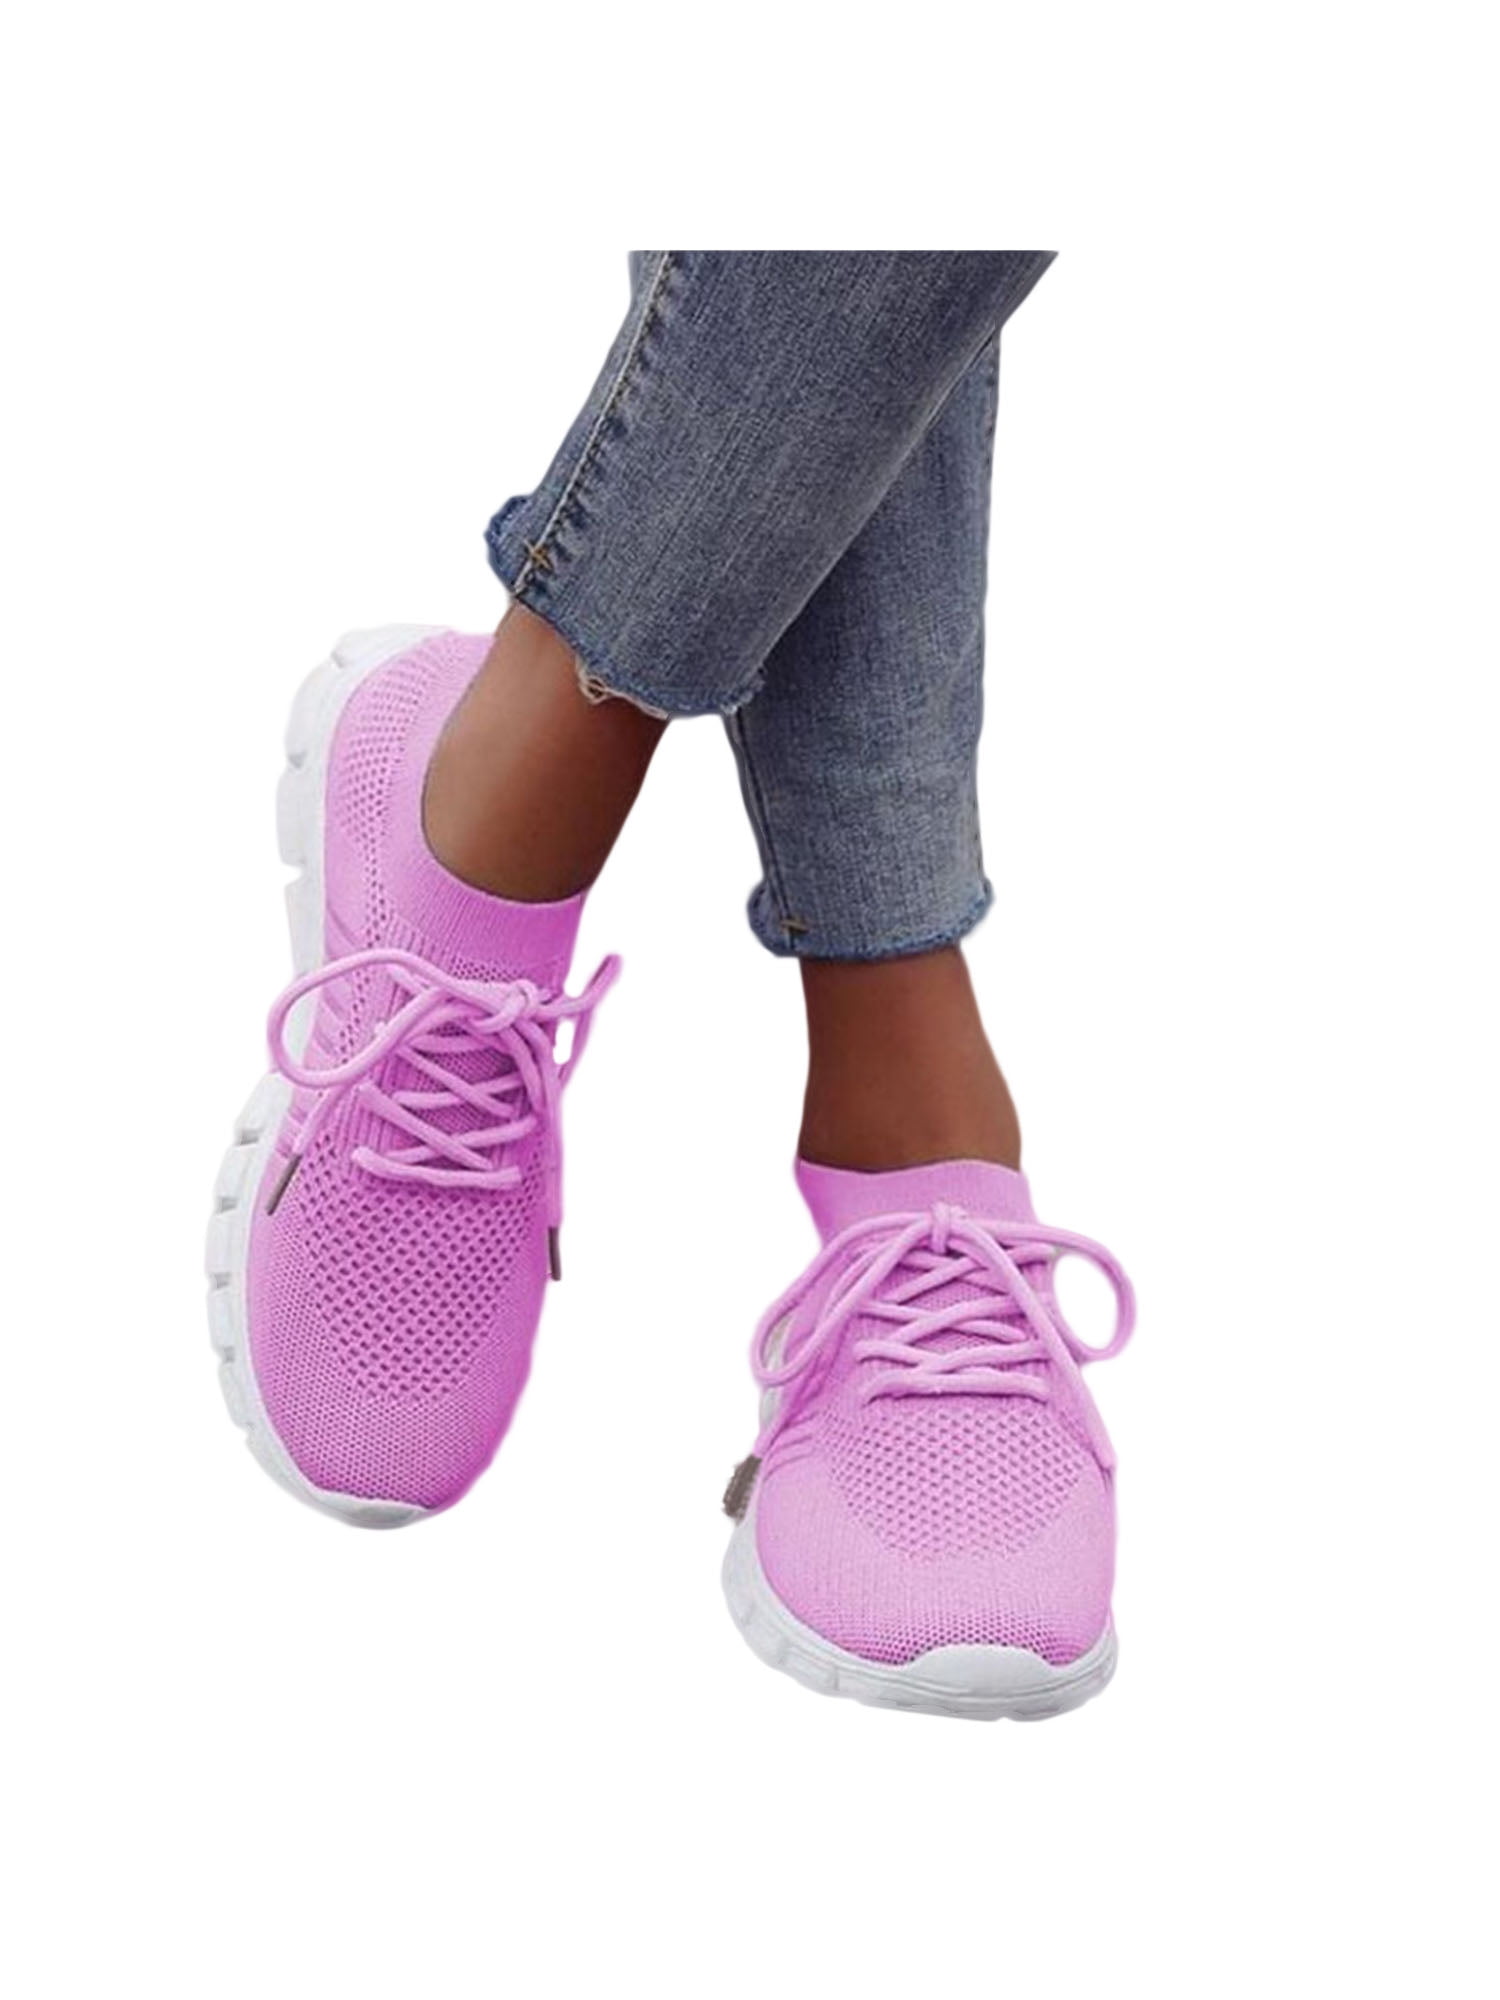 2020 Women's Tennis Shoes Ladies Casual Athletic Walking Running Sport Sneakers 